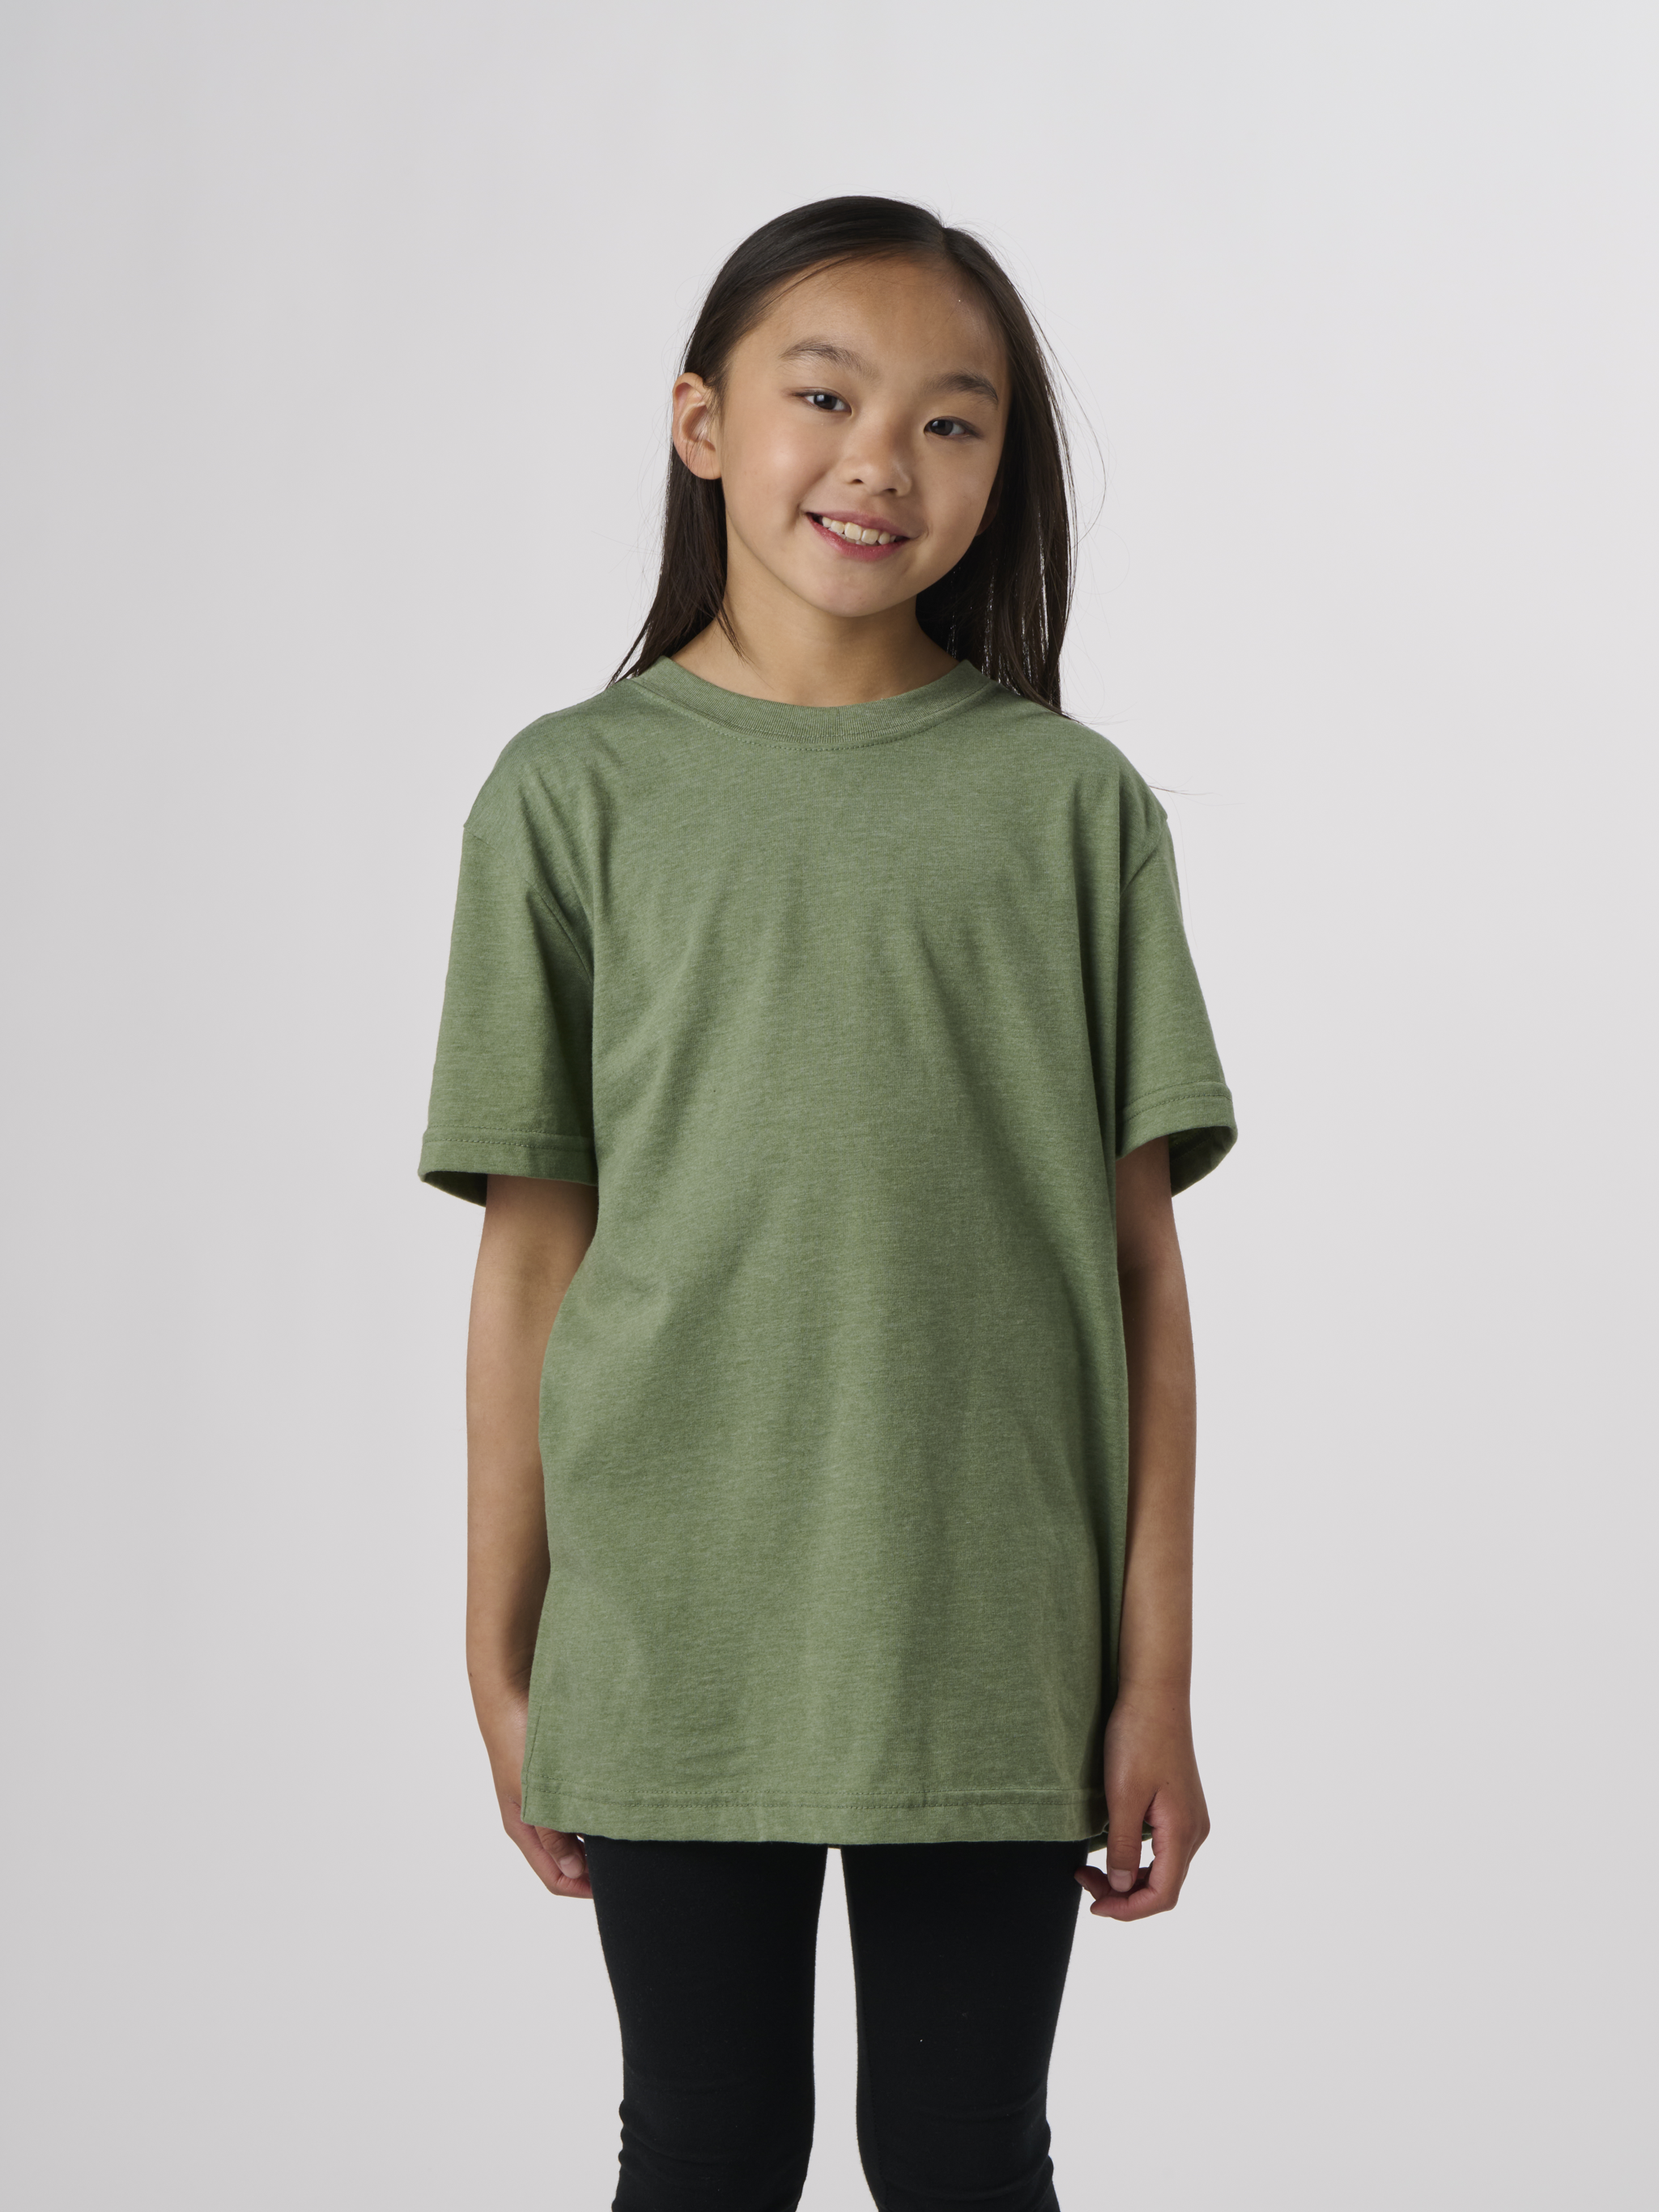 EY100 - Youth Eco Short Sleeve T-Shirt